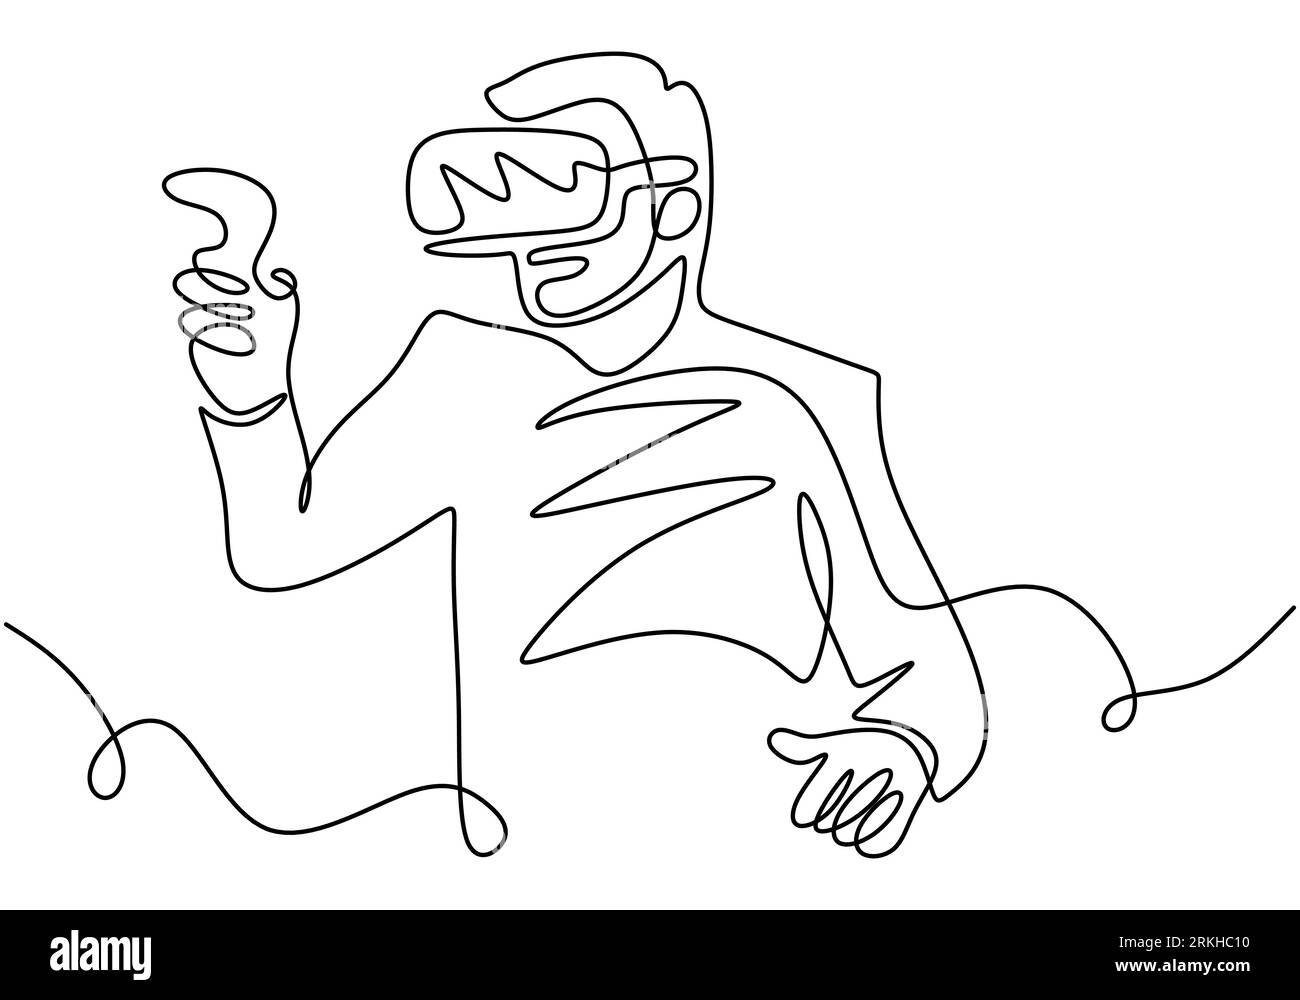 Kontinuierliche Linienzeichnung des Menschen in VR-Brille mit Motion Controller. Ein männlicher Spieler, der virtuelle Spiele spielt, handgezeichnete Kunst, die minimalistisches Design kritzelt. Te Stock Vektor